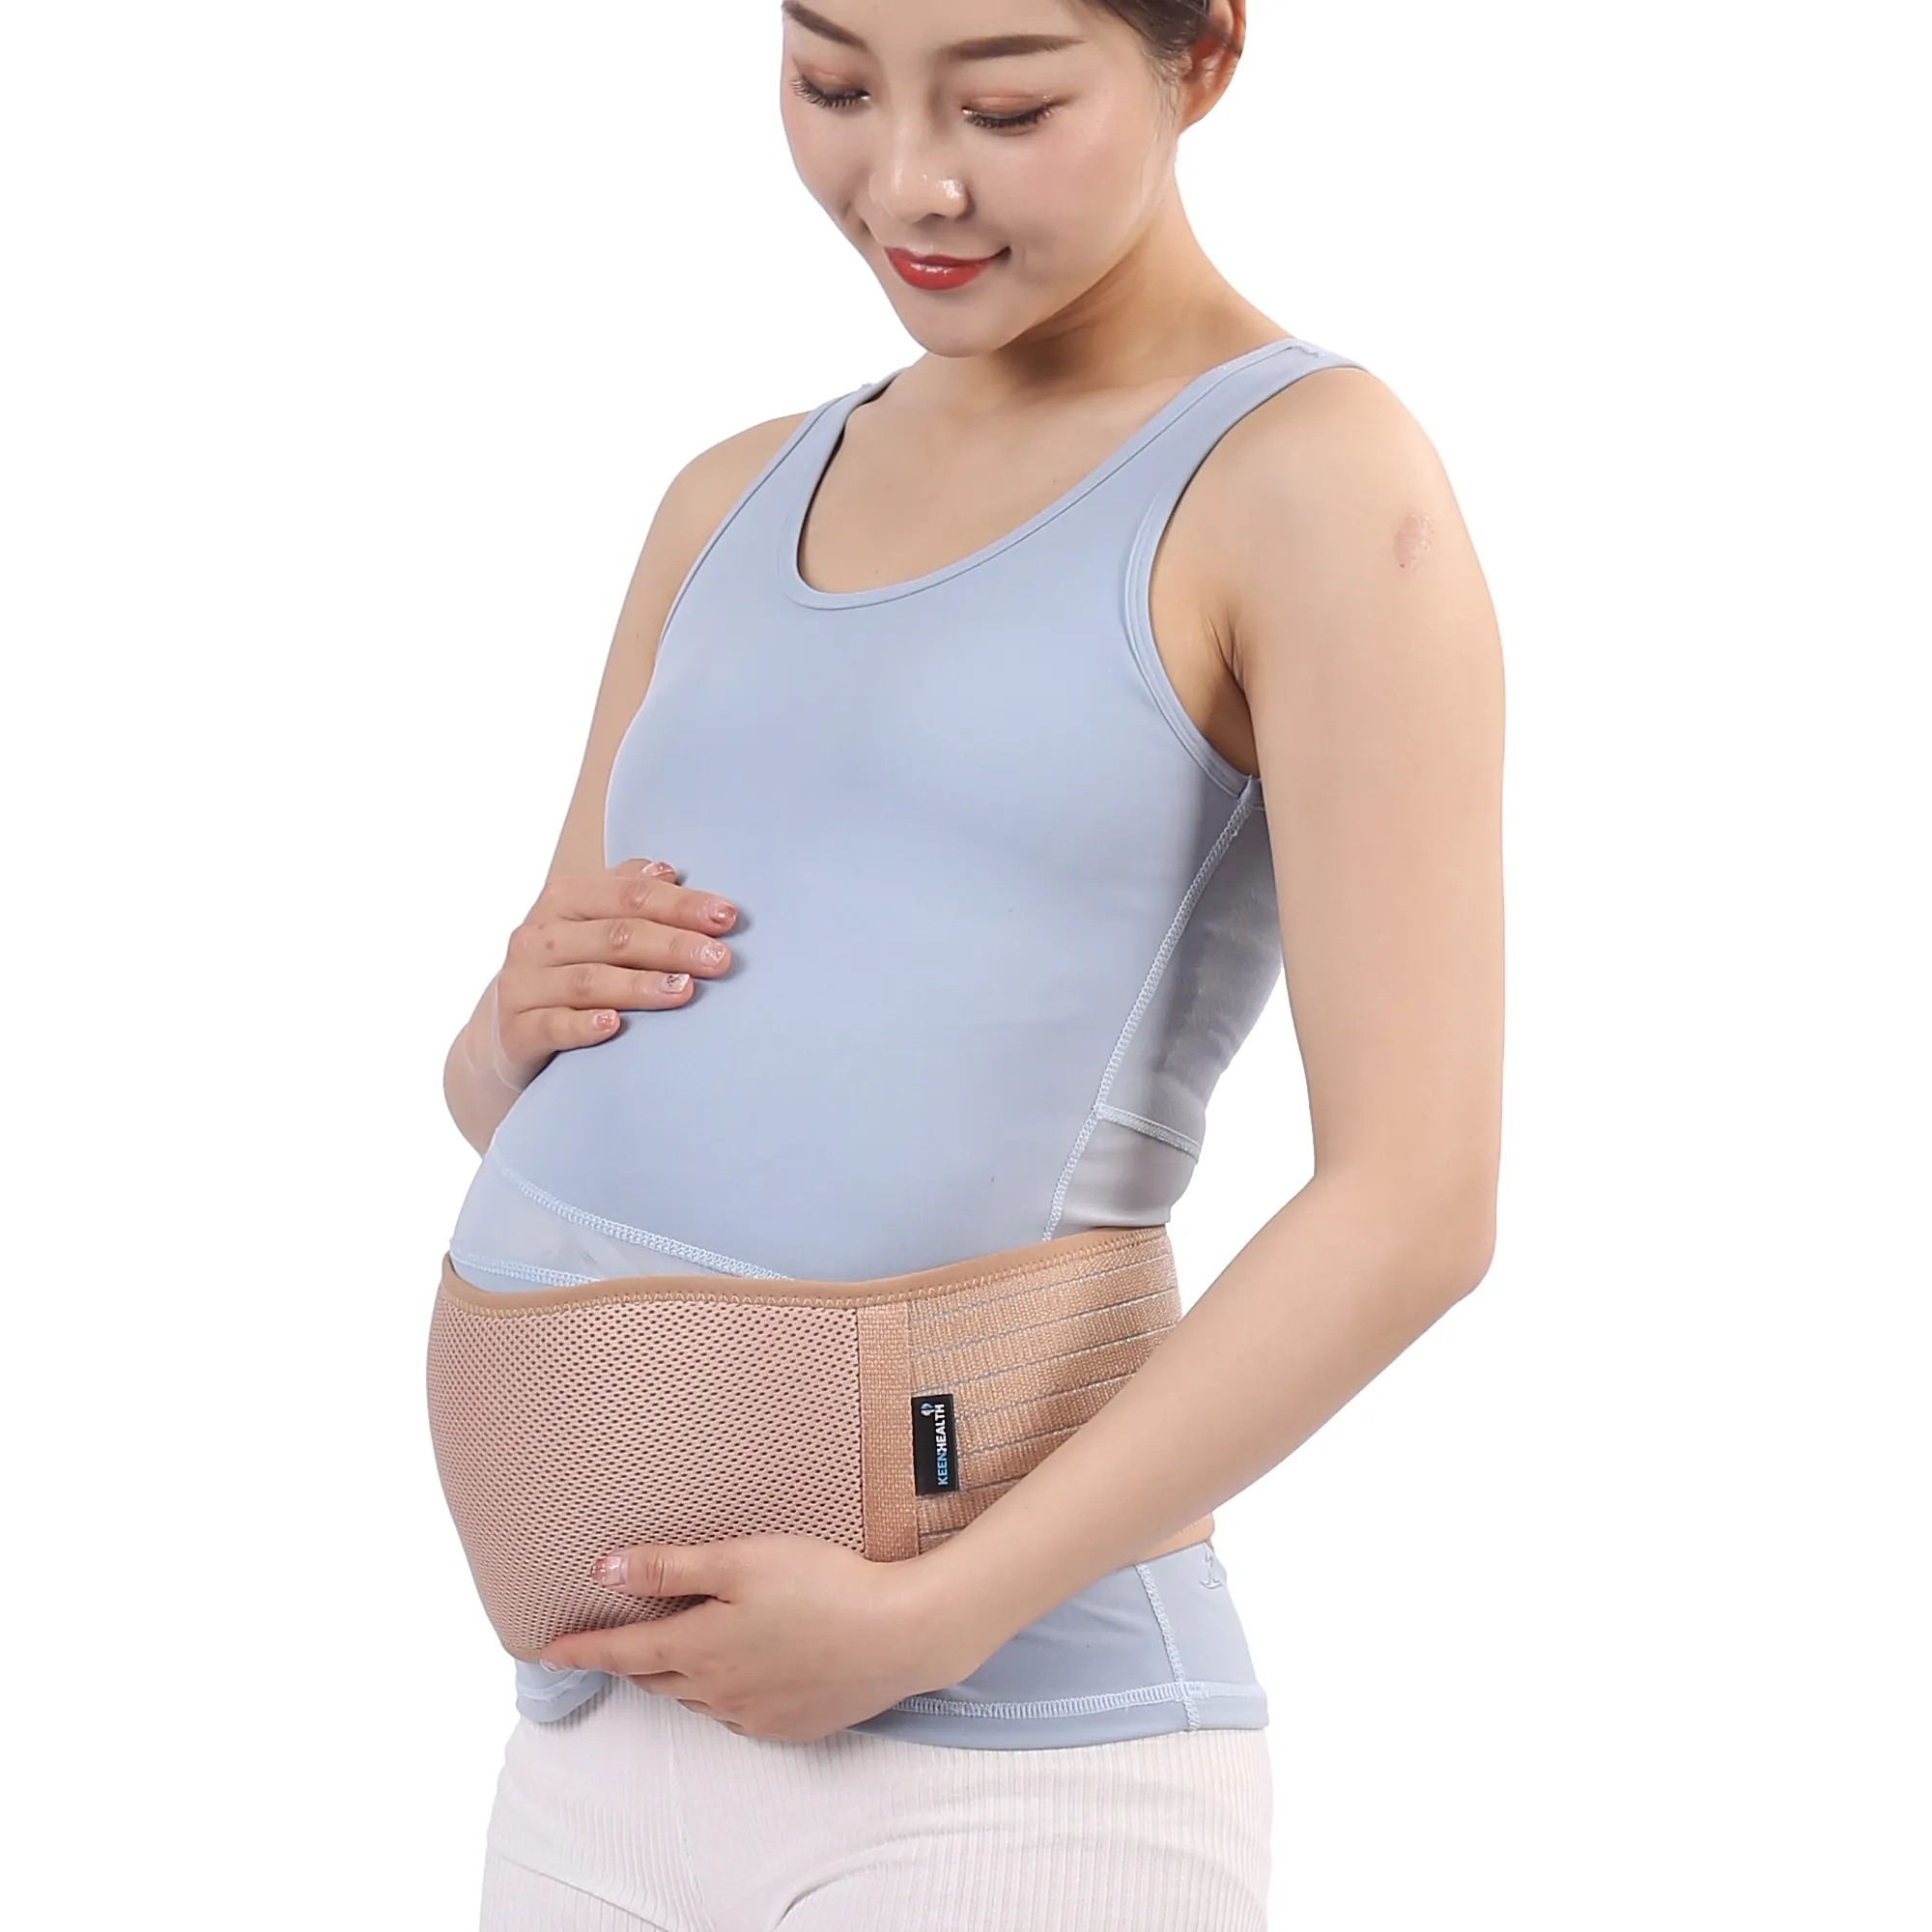 गर्भावस्था के मध्य से अंत तक गर्भवती महिलाओं के लिए पेट की बेल्ट, गर्भवती महिलाओं के लिए बेल्ट सुरक्षा ट्विन बेबी पेट की बेल्ट